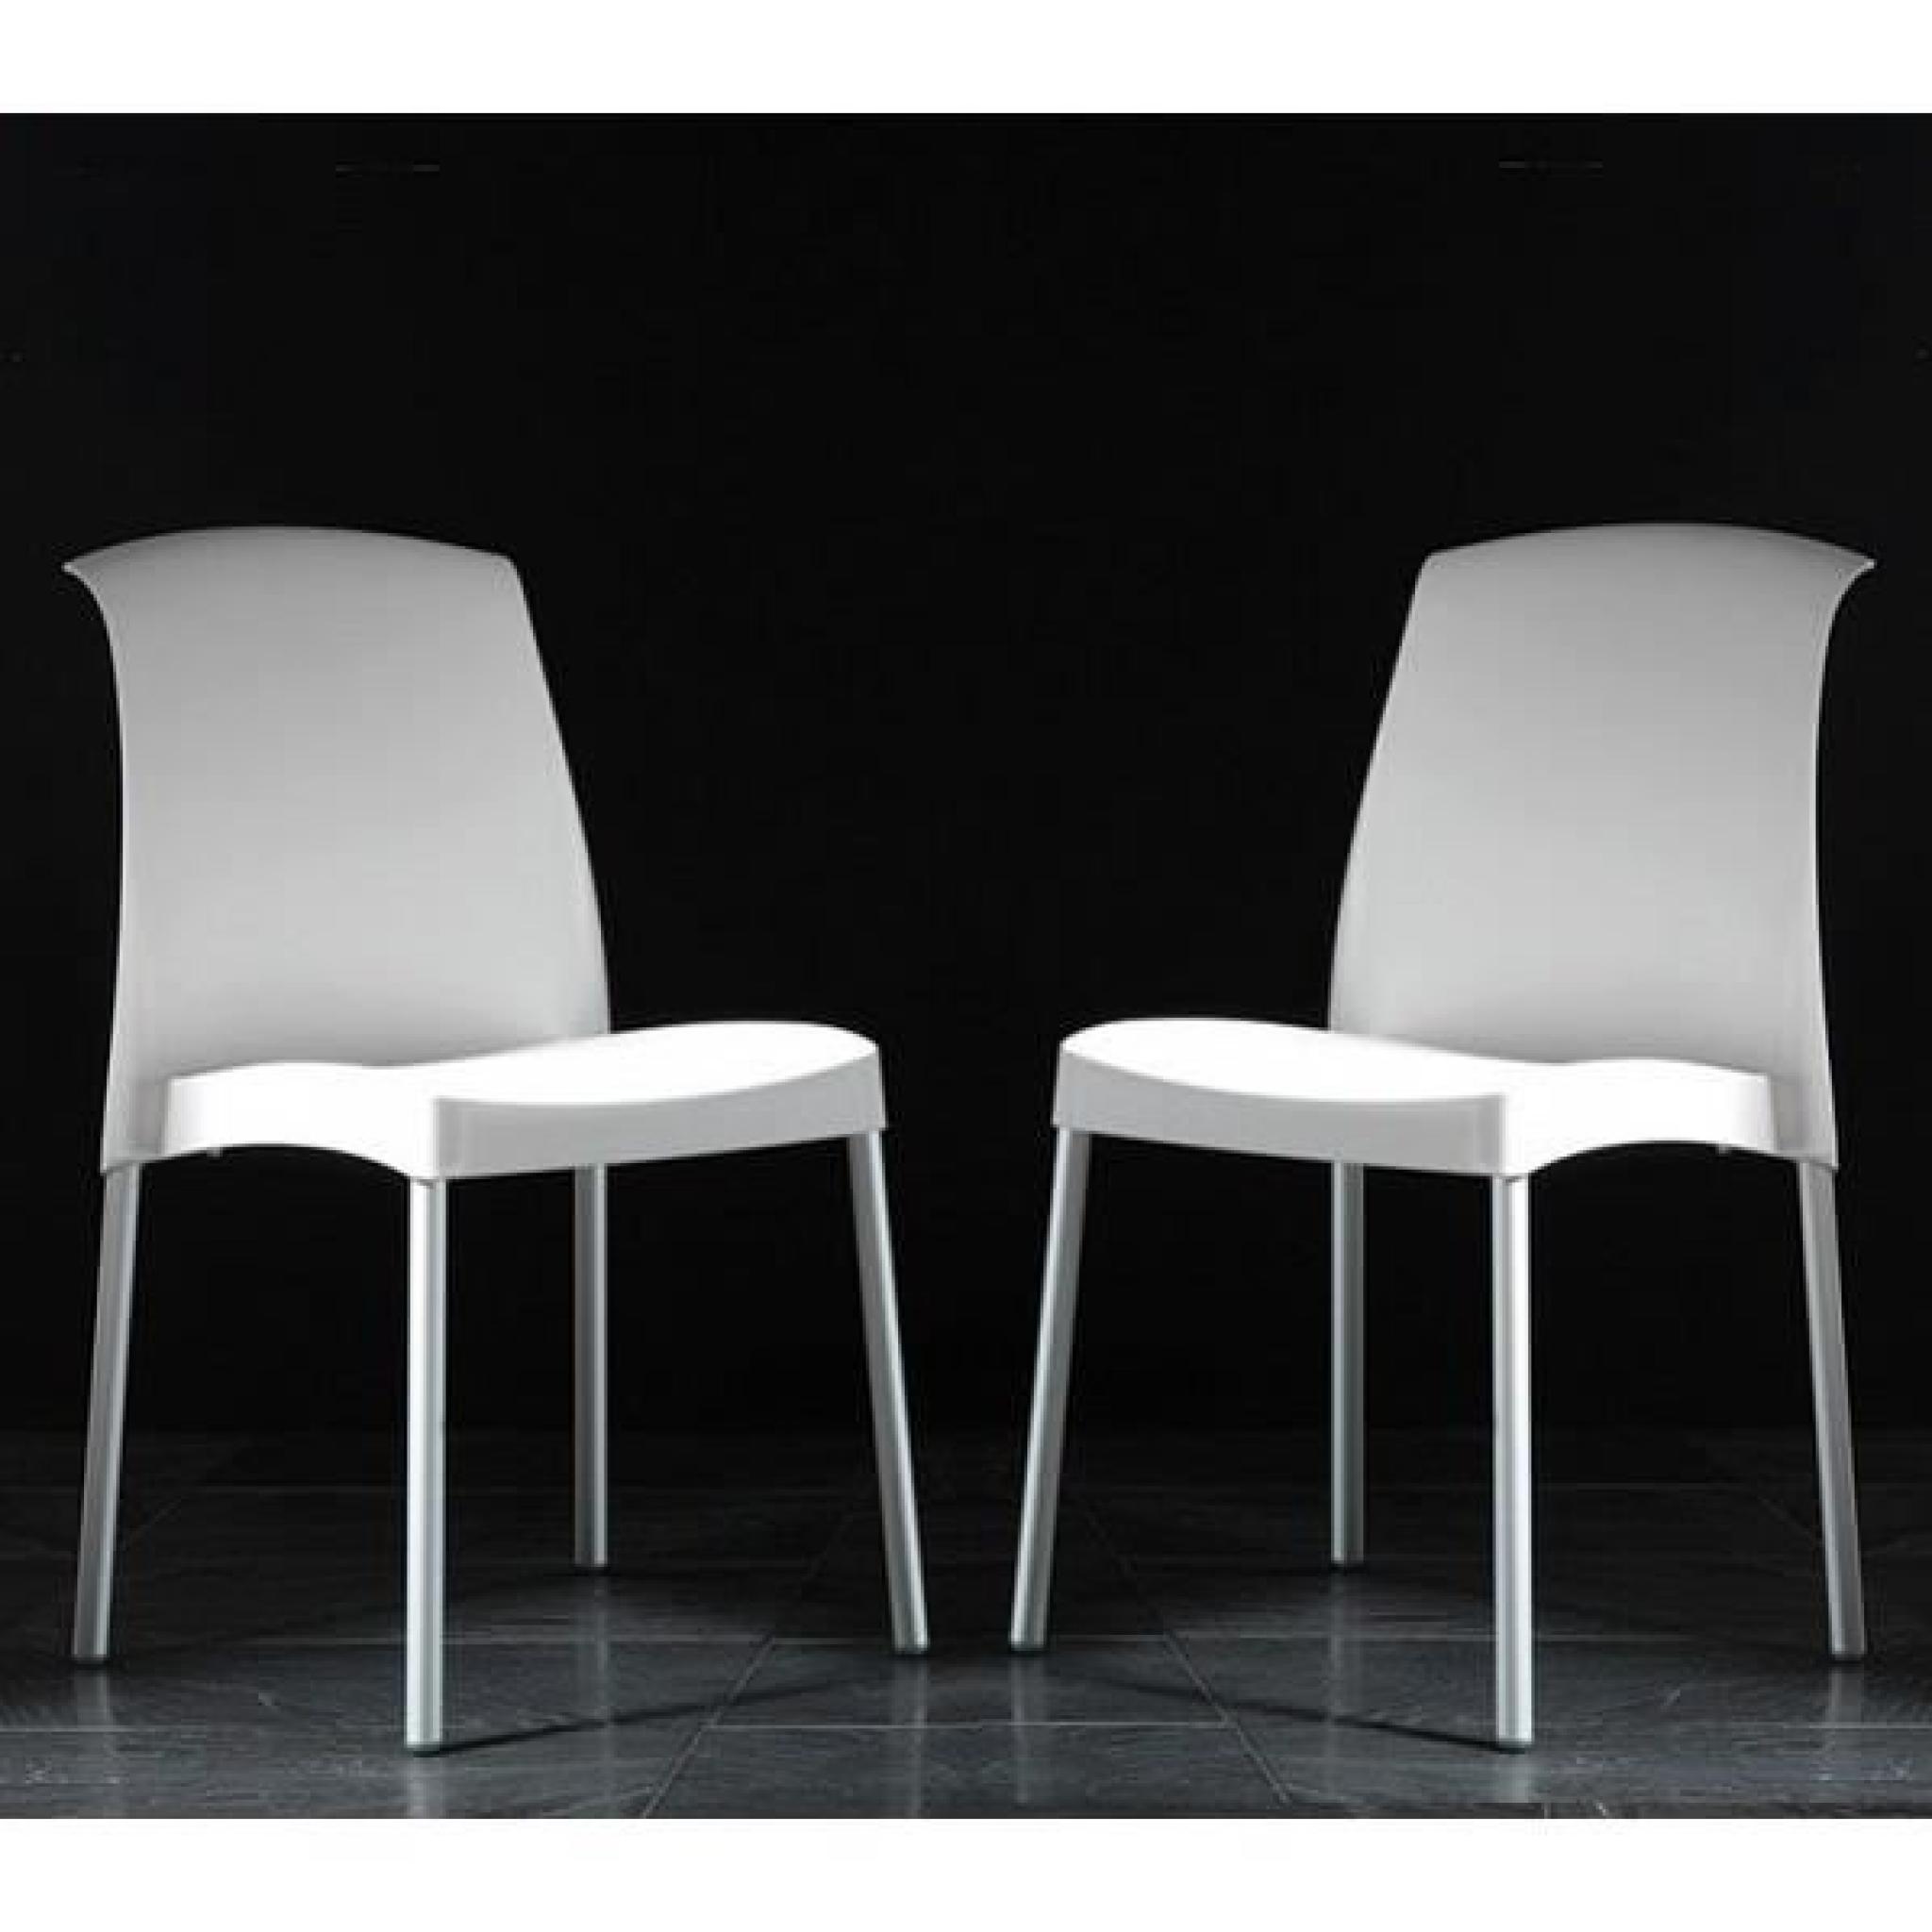 La chaise design JANE de la collection Prestige d'INSIDE apportera sobriété et élégance à votre intérieur.  Son style intemporel ...